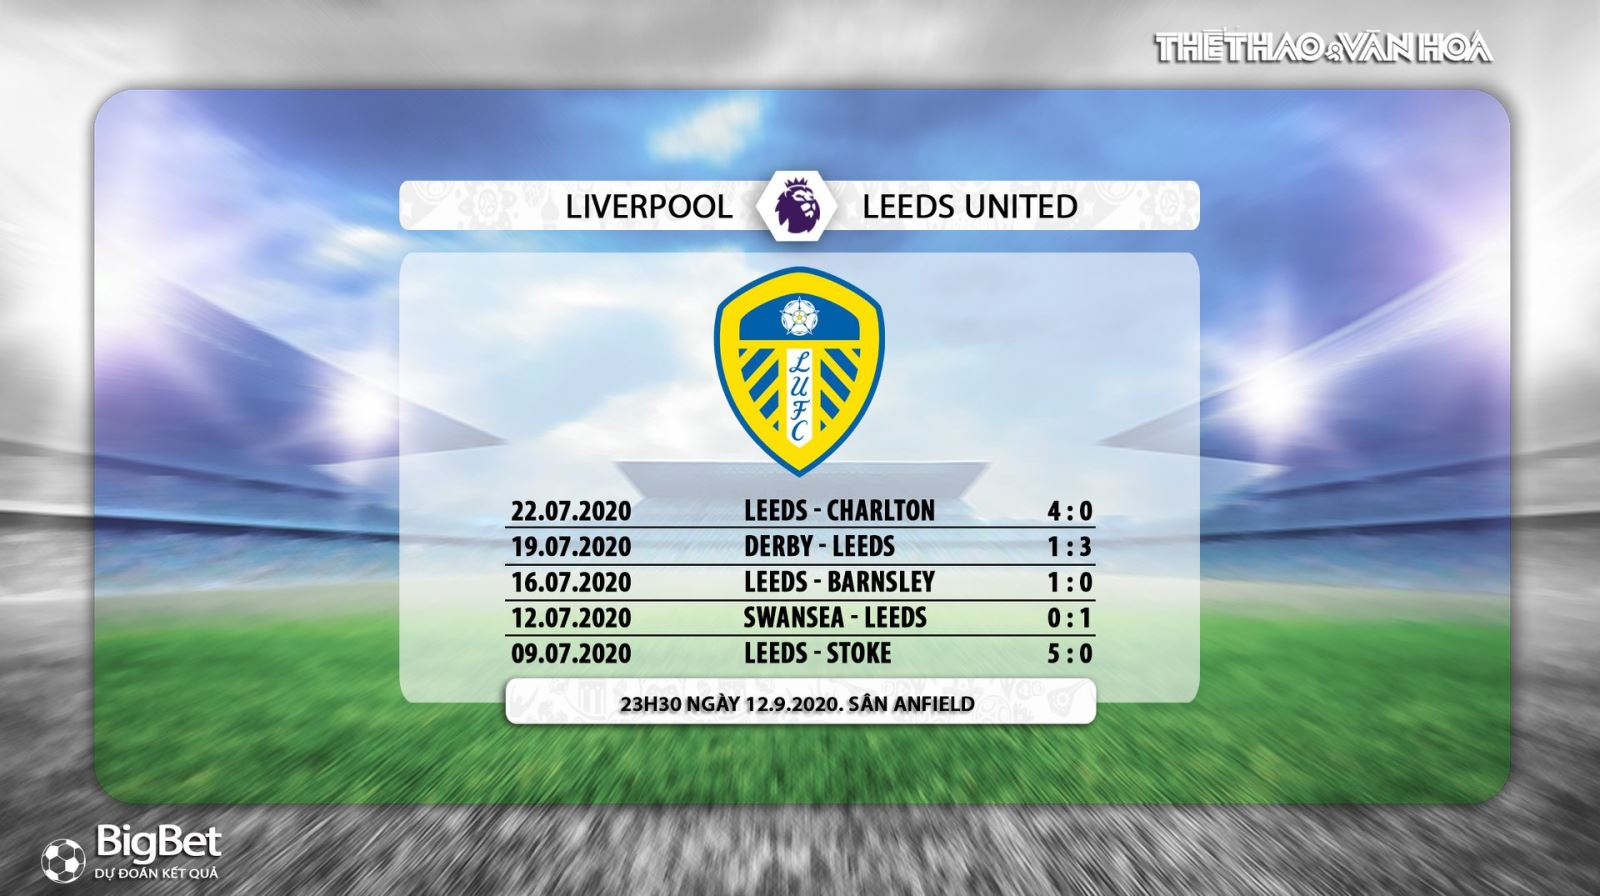 Liverpool vs Leeds United, liverpool, leeds, nhận định bóng đá, nhận định bóng đá Liverpool vs Leeds United, trực tiếp Liverpool vs Leeds United, bóng đá, bóng đá hôm nay